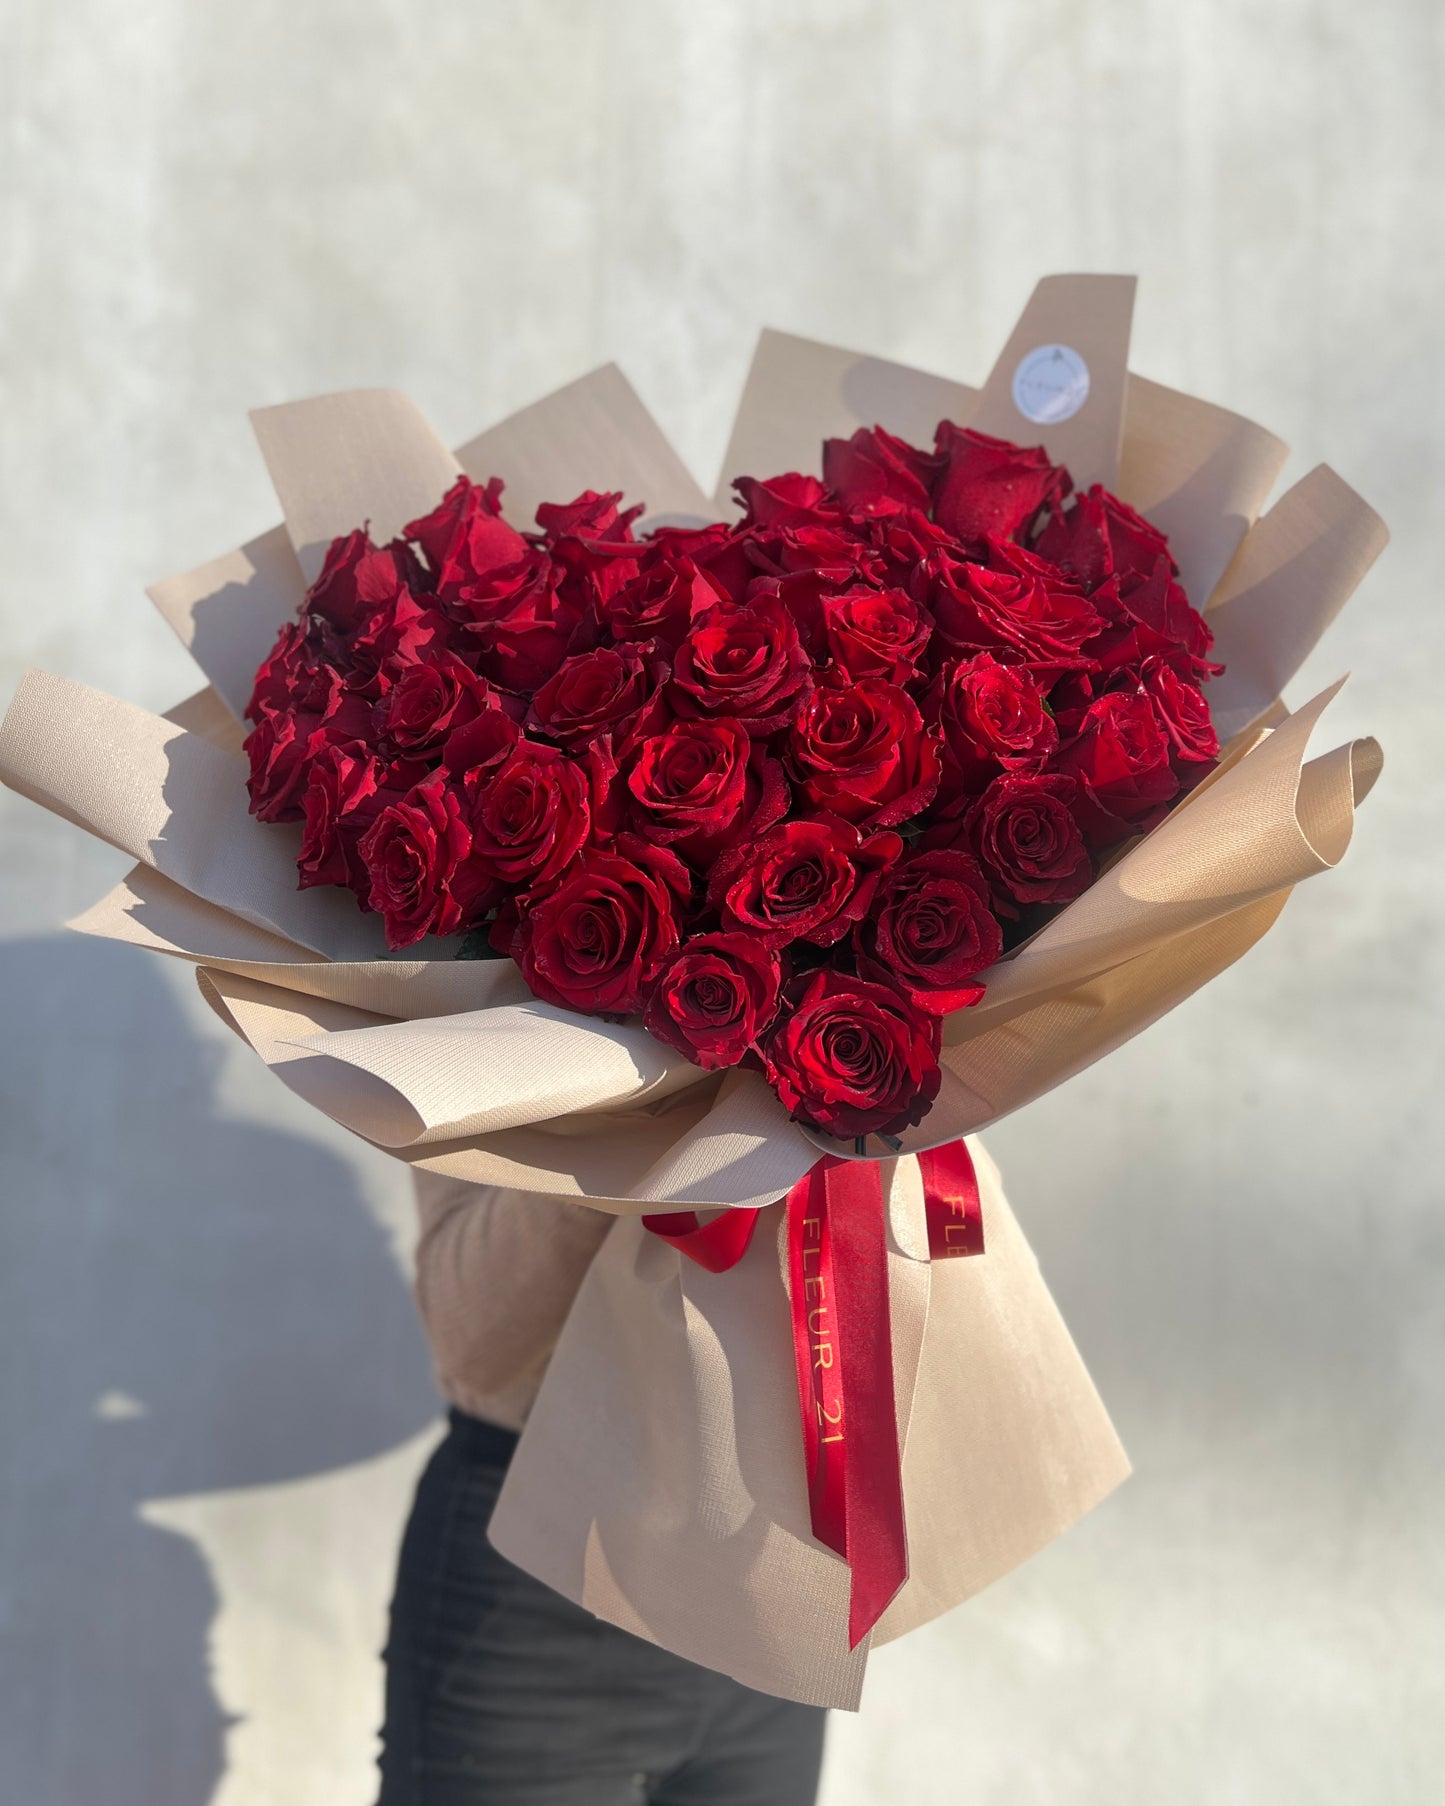 Hoa hồng đỏ hình trái tim trong giấy